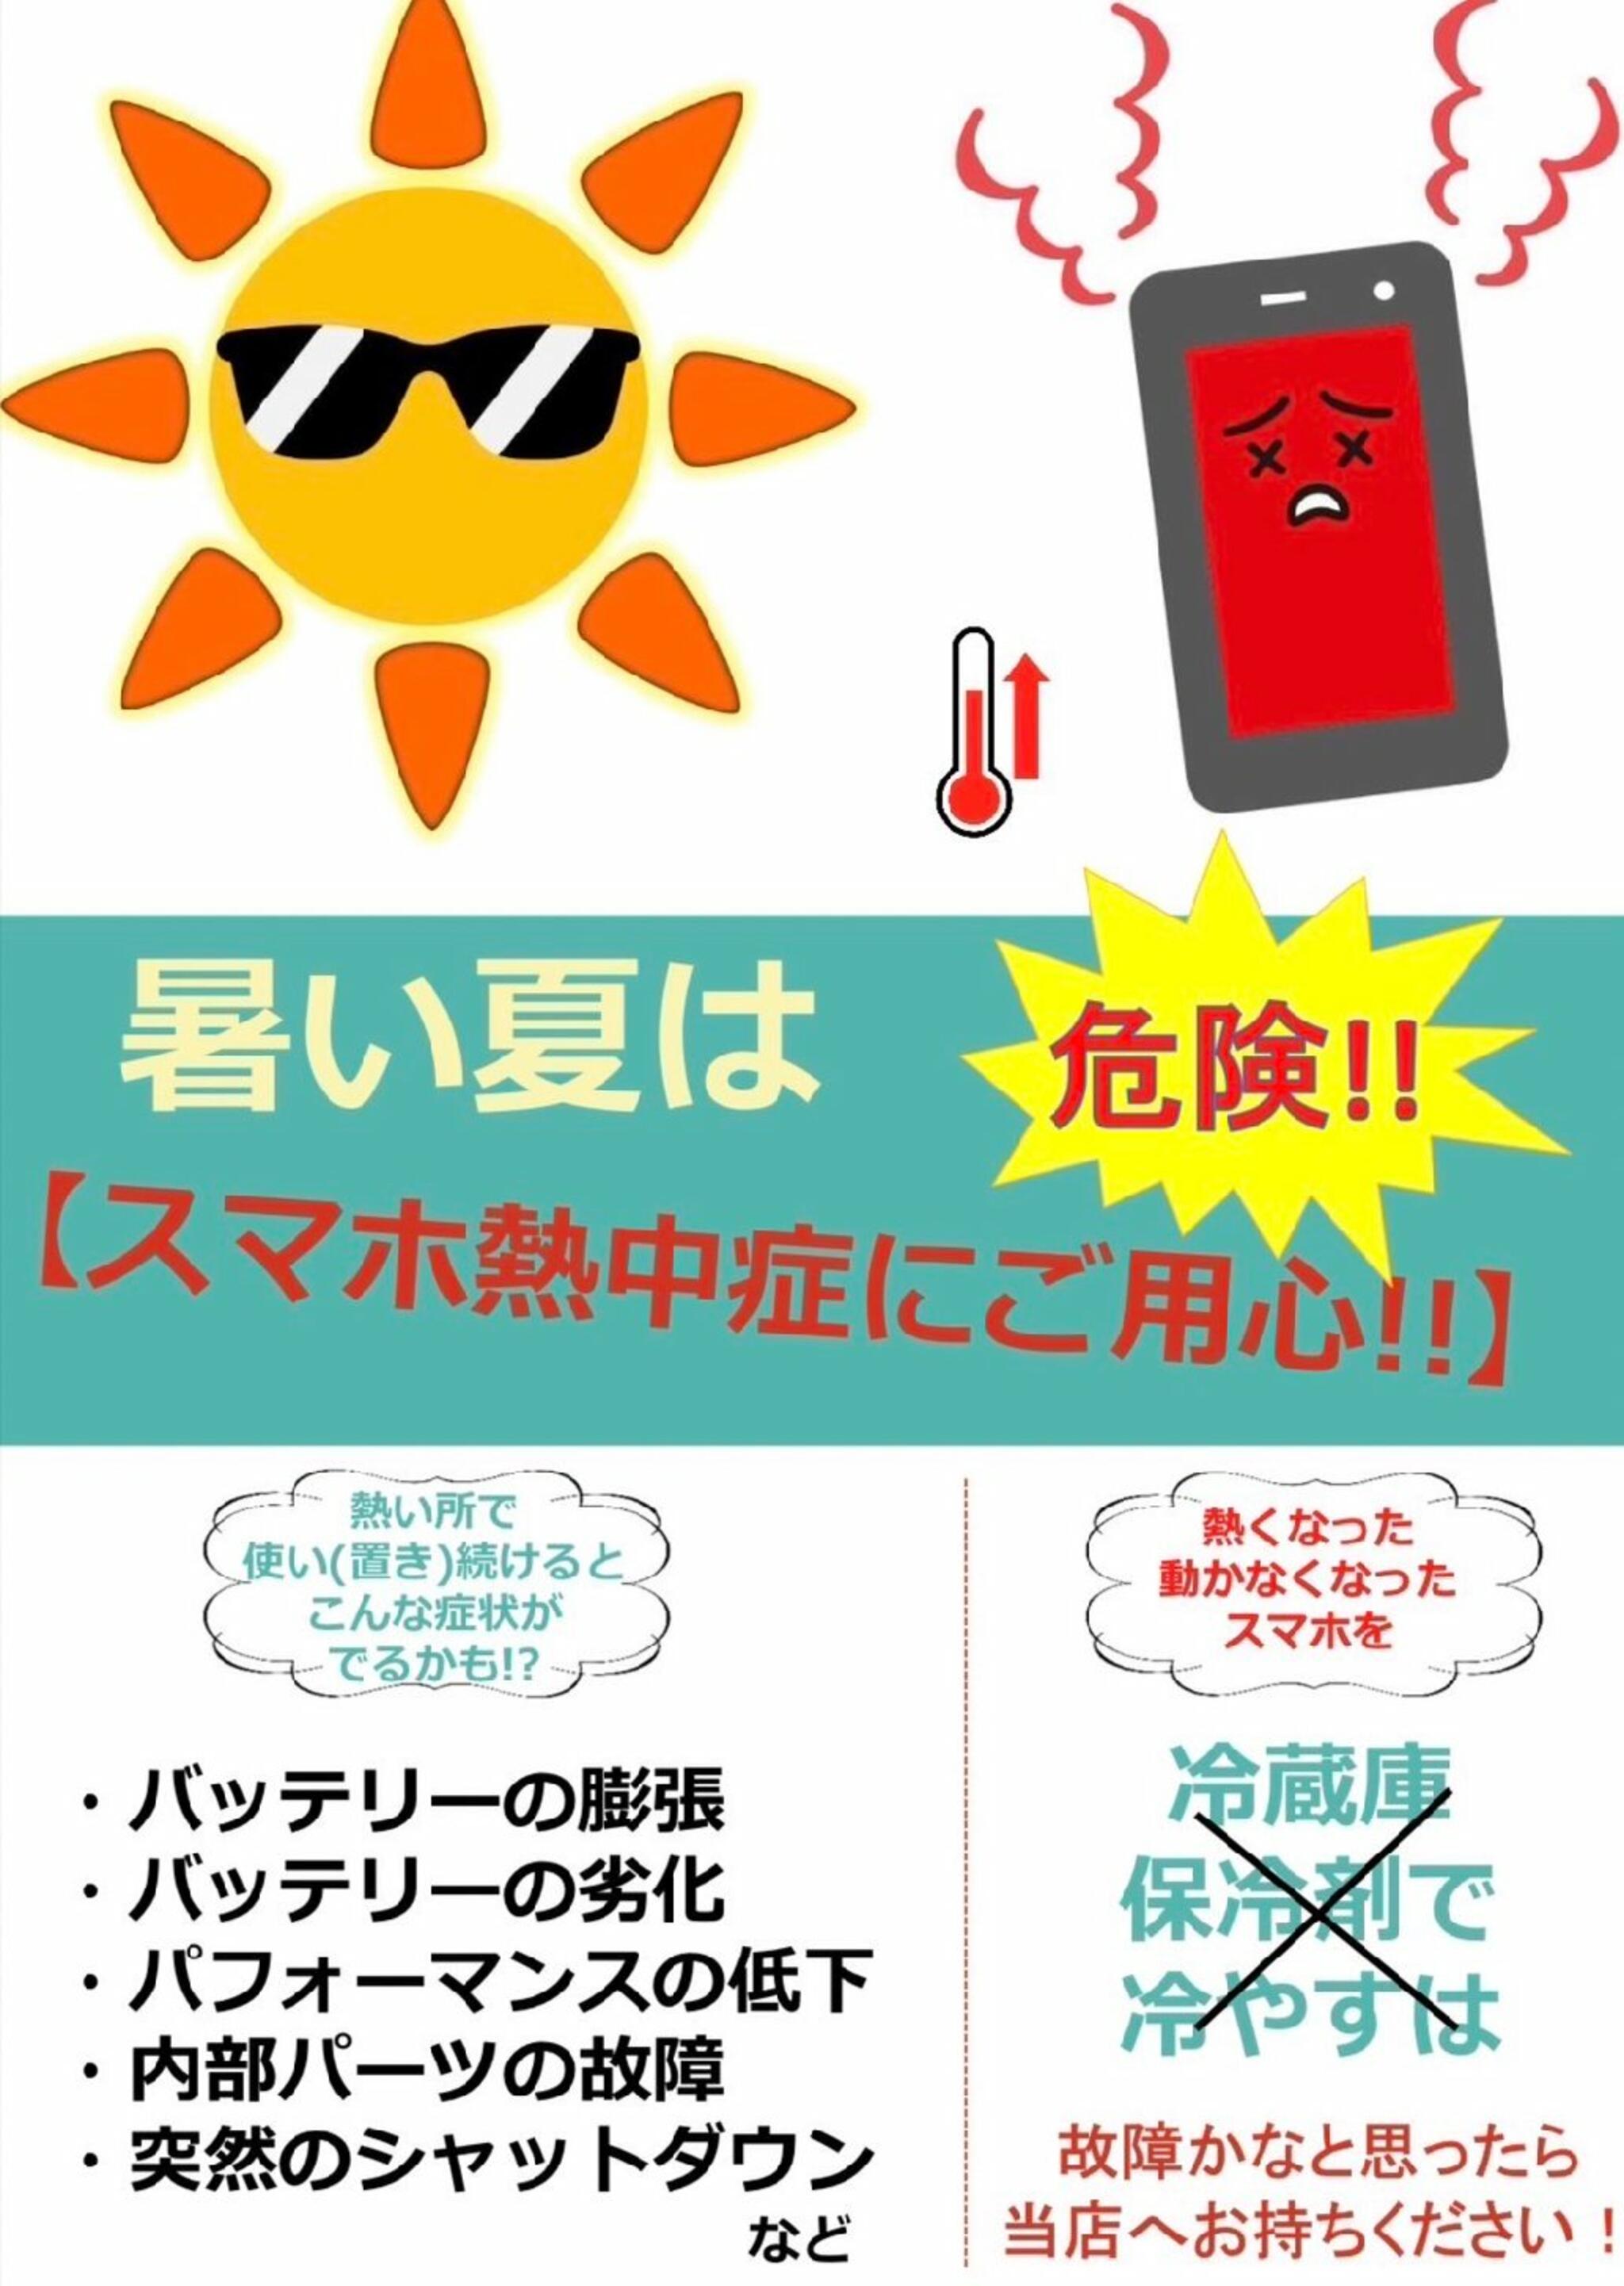 iPhone・iPad・Switch修理店 スマートクール イオンモール広島祇園店からのお知らせ(人間 だけでなく、スマホの熱中症にもご注意ください！)に関する写真